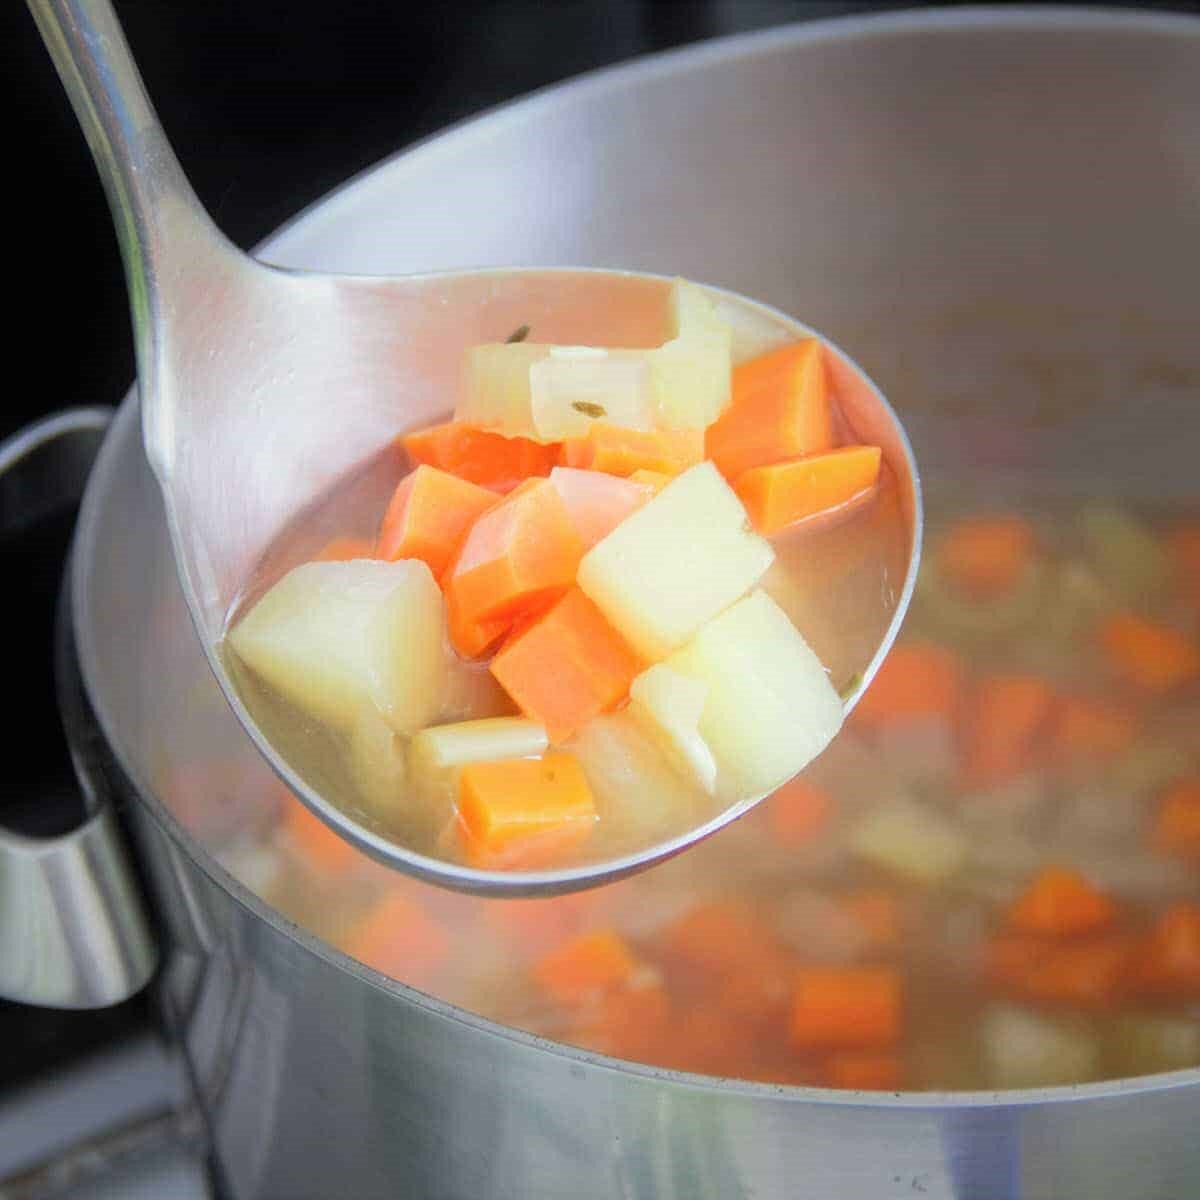 / Khoai tây và cà rốt cần được luộc kỹ trước khi đem nghiền để món ăn ngon miệng hơn. Ảnh: Xinhua